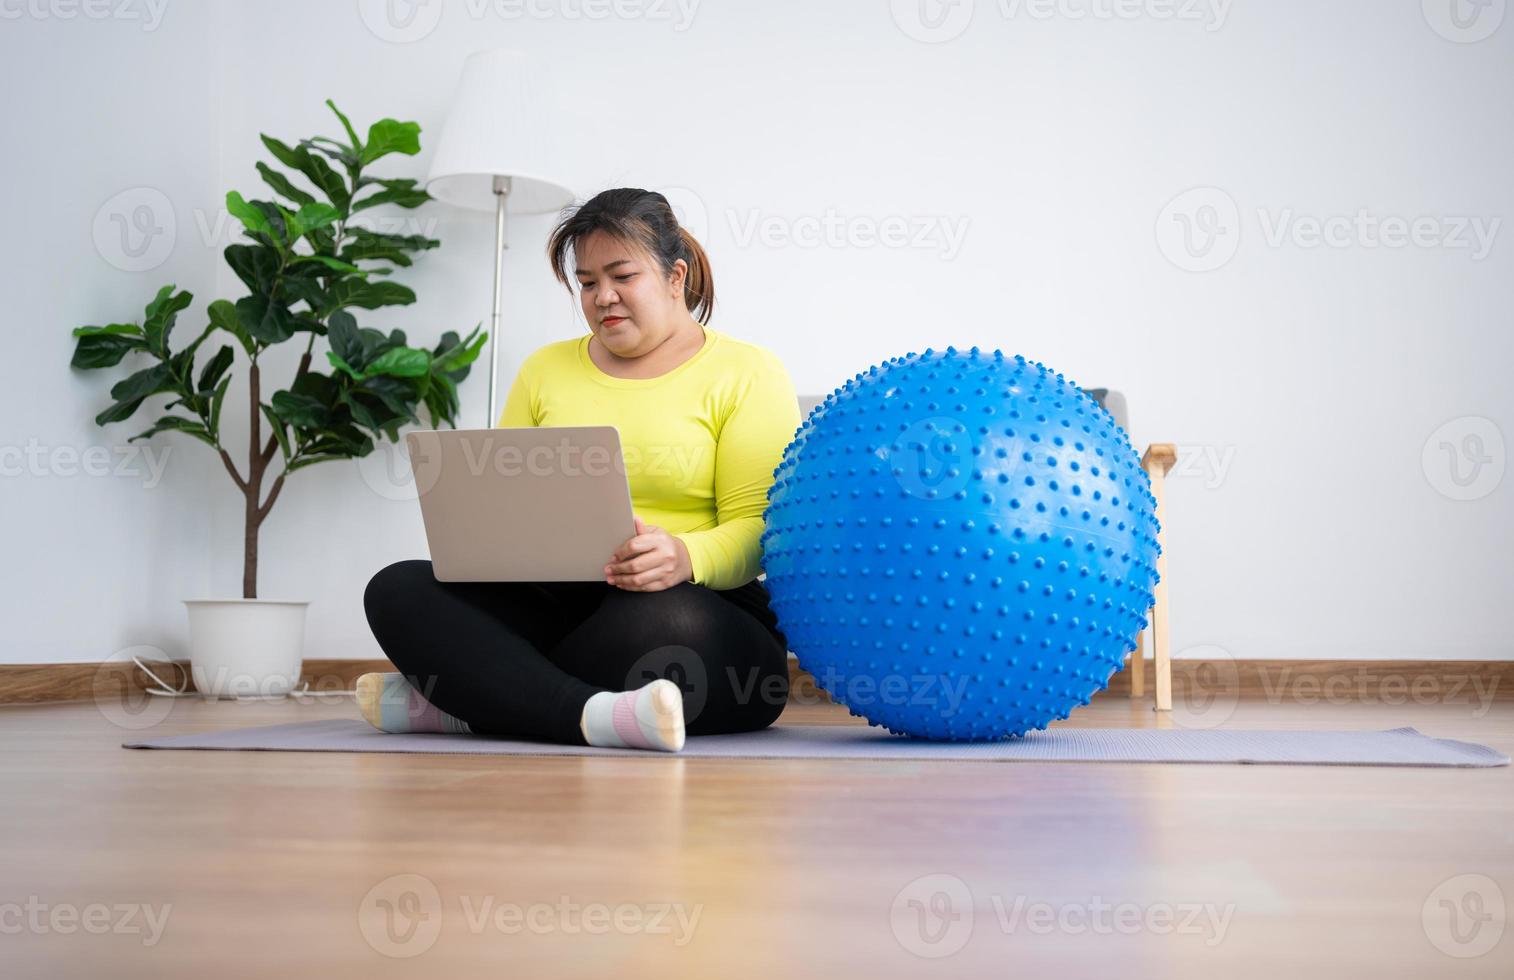 retrato más tamaño mujer usuario computadora portátil para unirse a la clase de fitness para hacer ejercicio con pelota de fitness en el gimnasio en casa. concepto de tecnología y comunicación, salud y pérdida de peso. foto